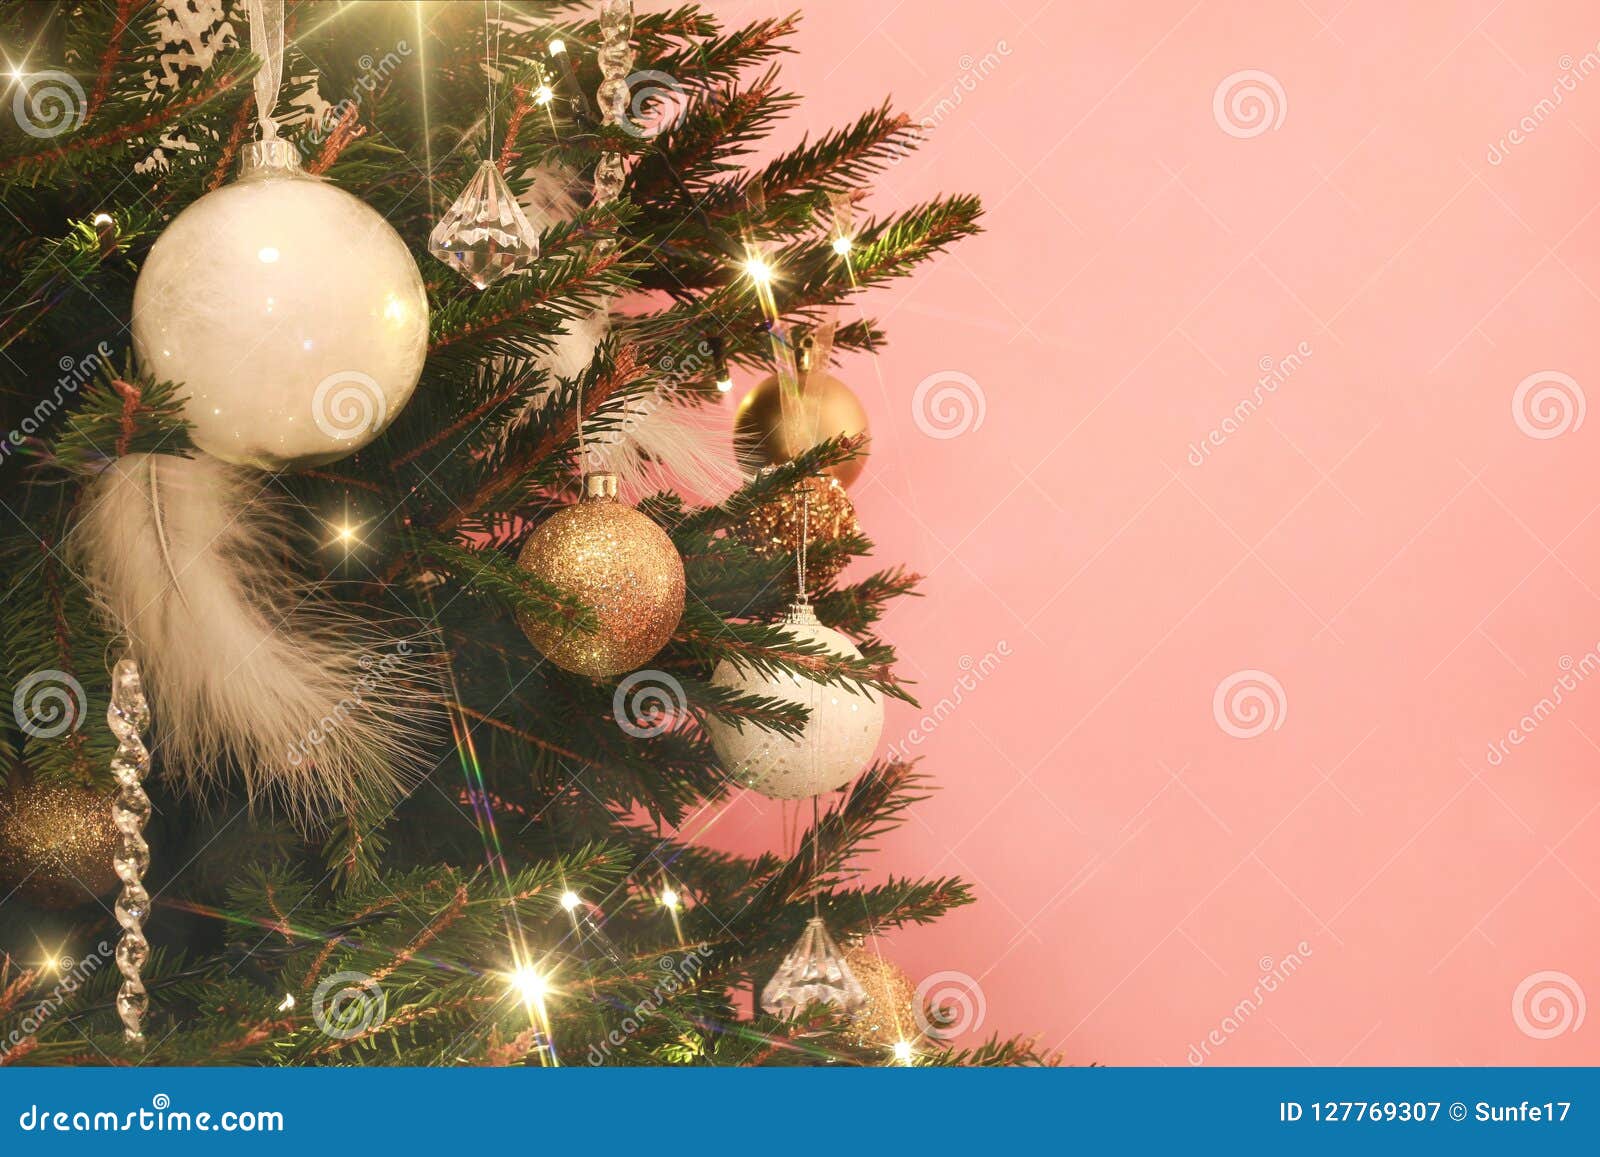 Cây thông đêm Noel trang trí vàng trắng trên nền hồng thật tuyệt vời và đặc biệt. Nếu bạn đang muốn tìm một mẫu thiết kế độc đáo, sang trọng để trang trí cho Ngày lễ Giáng sinh, hãy cùng xem những hình ảnh đầy ấn tượng về cây thông vàng trắng trên nền hồng.